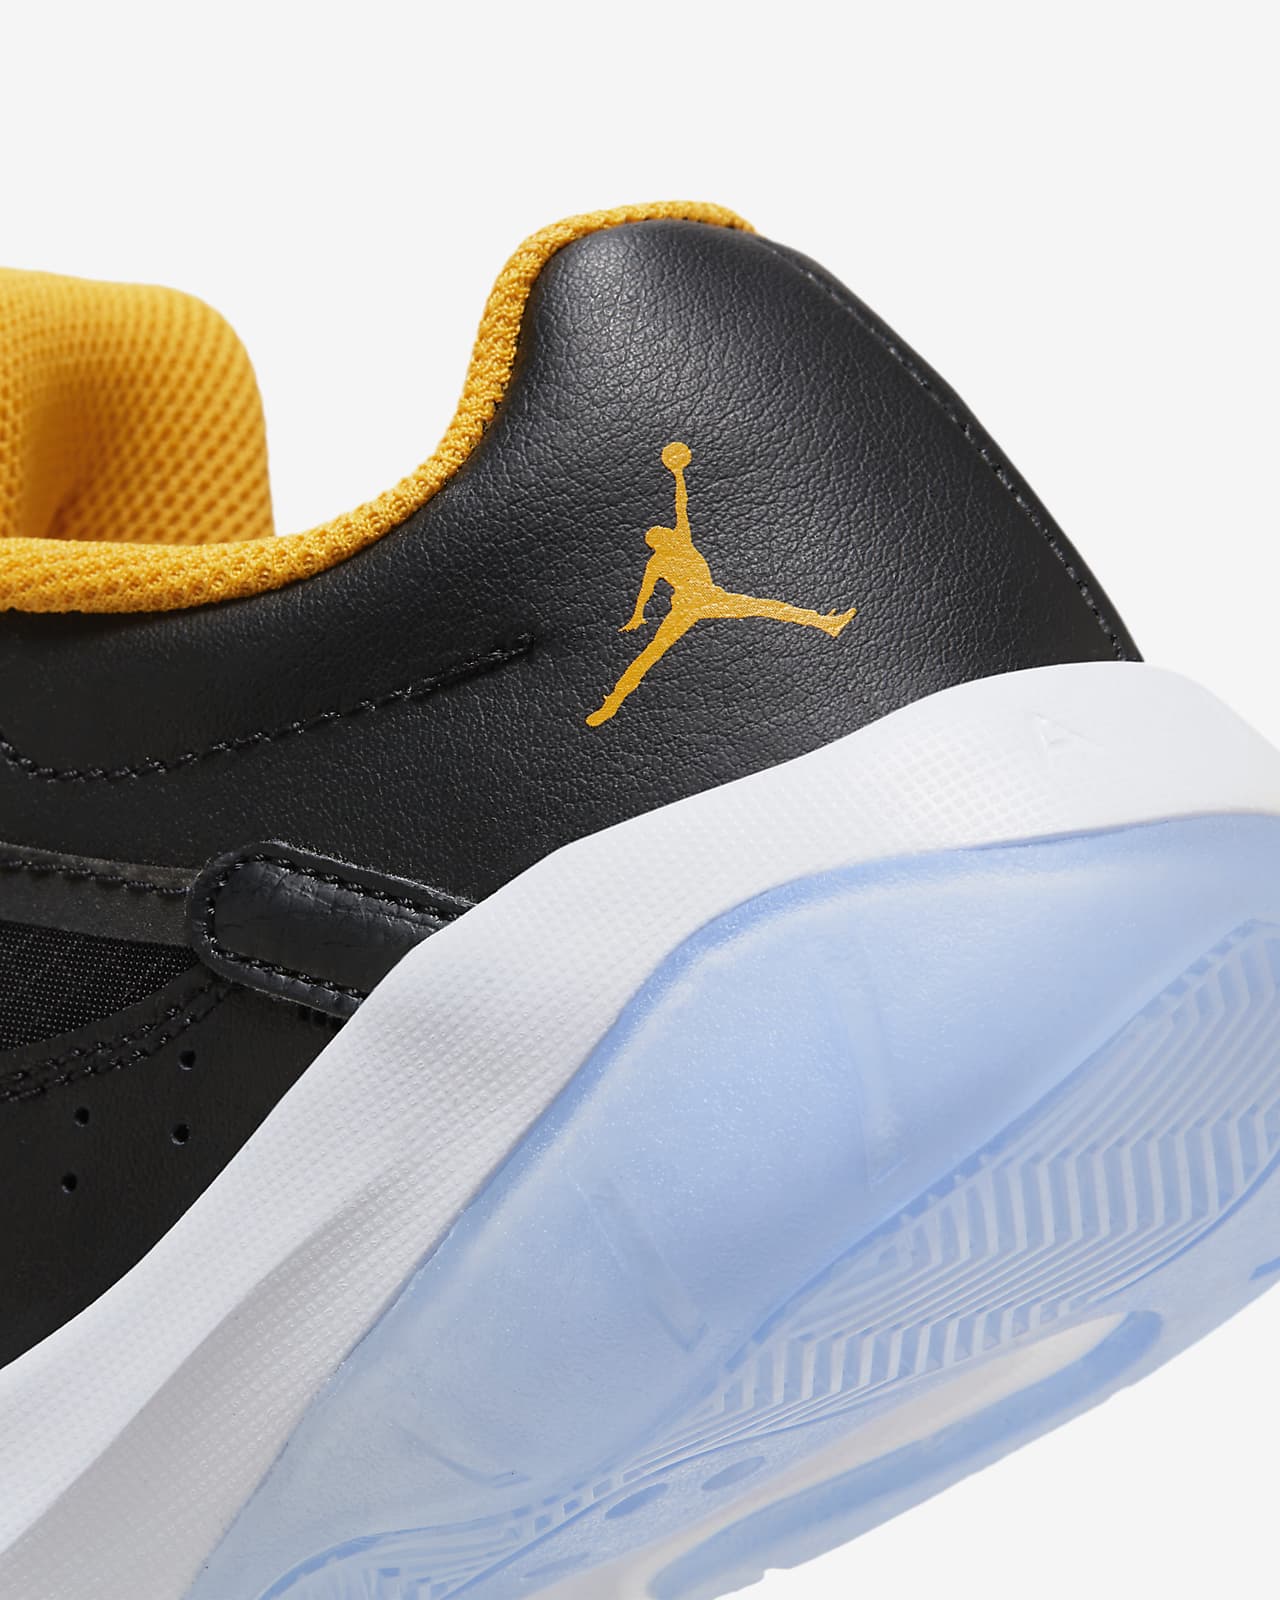 Air Jordan 11 CMFT Low Older Kids' Shoe. Nike SA